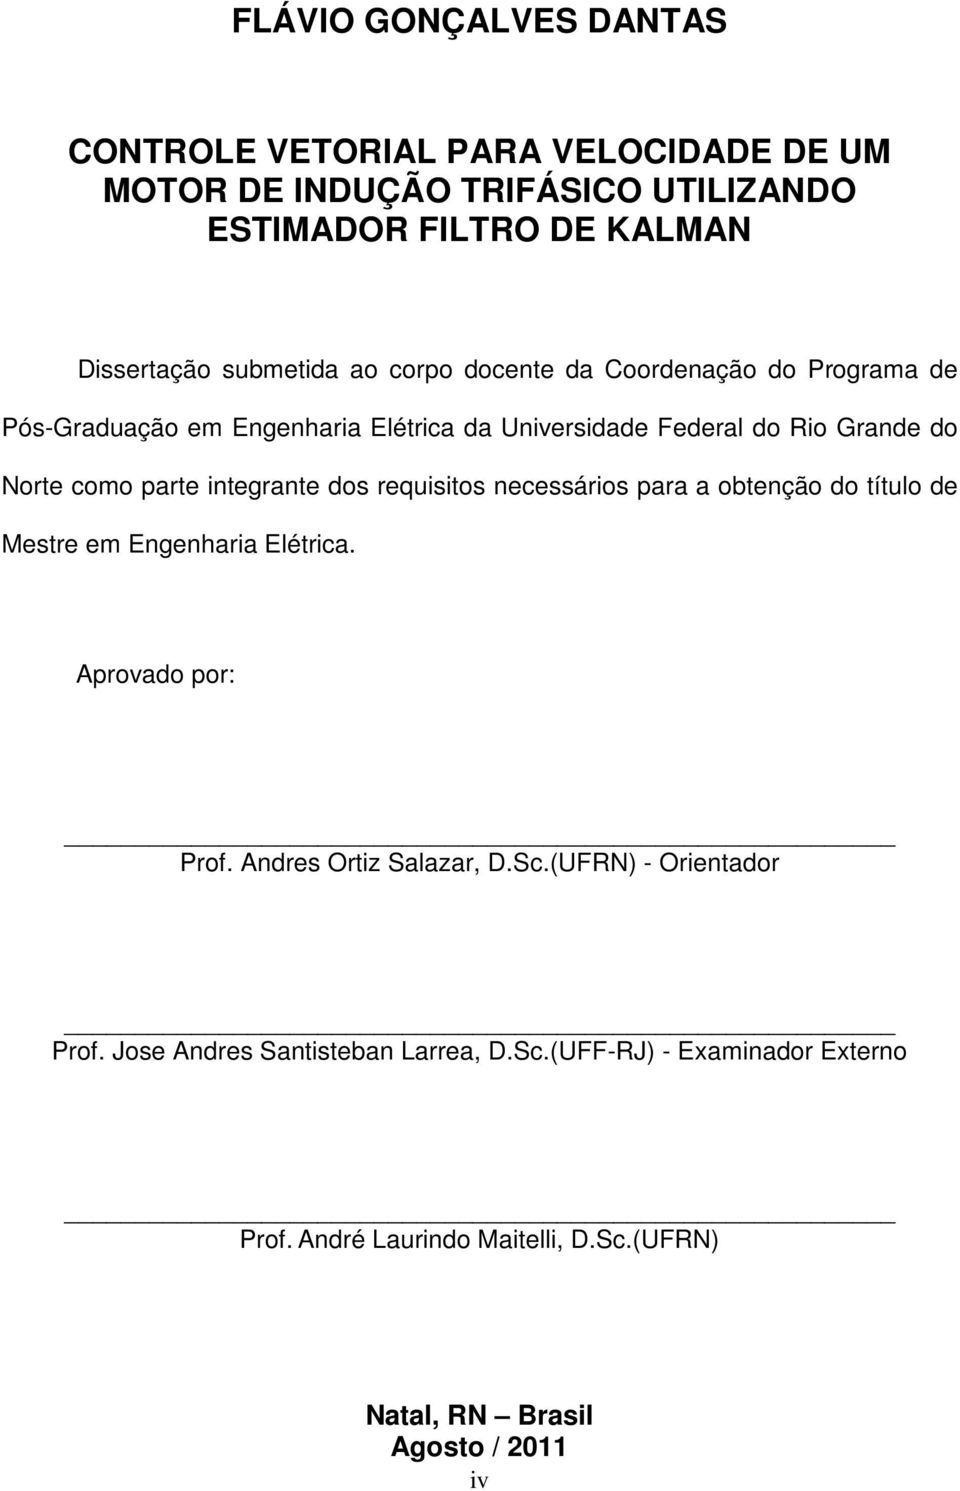 integrante dos requisitos necessários para a obtenção do título de Mestre em Engenharia Elétrica. Aprovado por: Prof. Andres Ortiz Salazar, D.Sc.